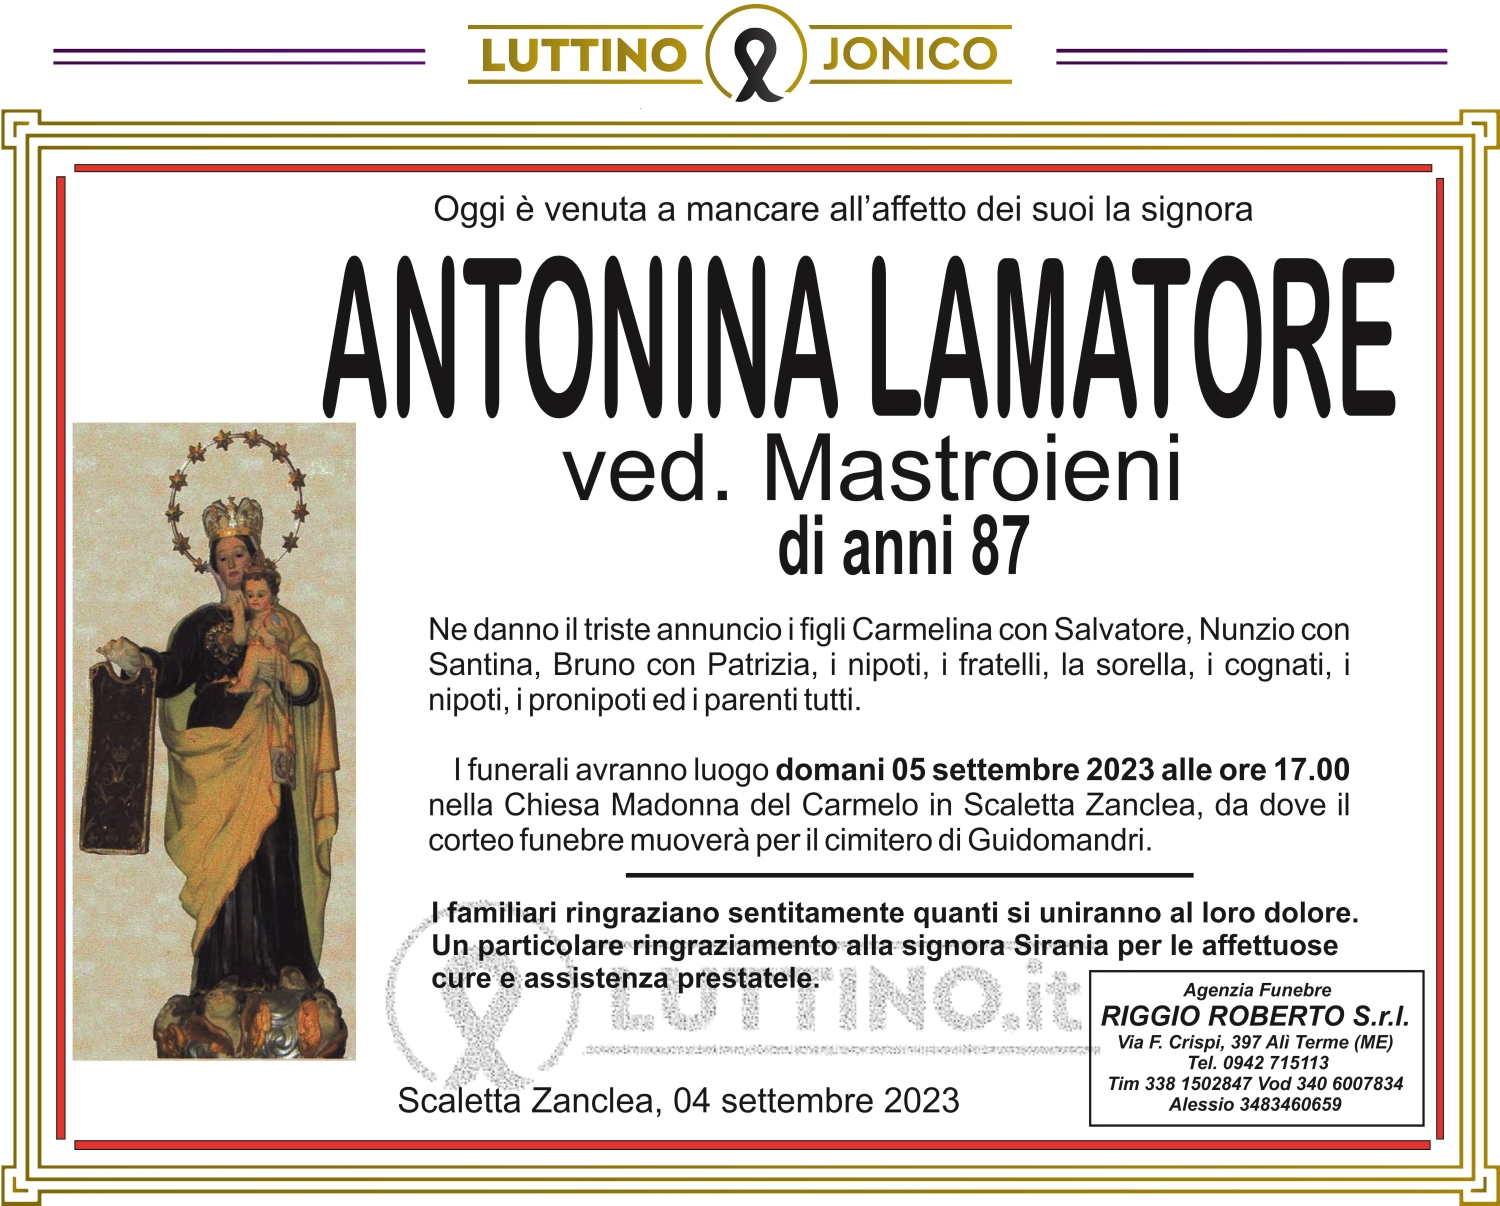 Antonina Lamatore